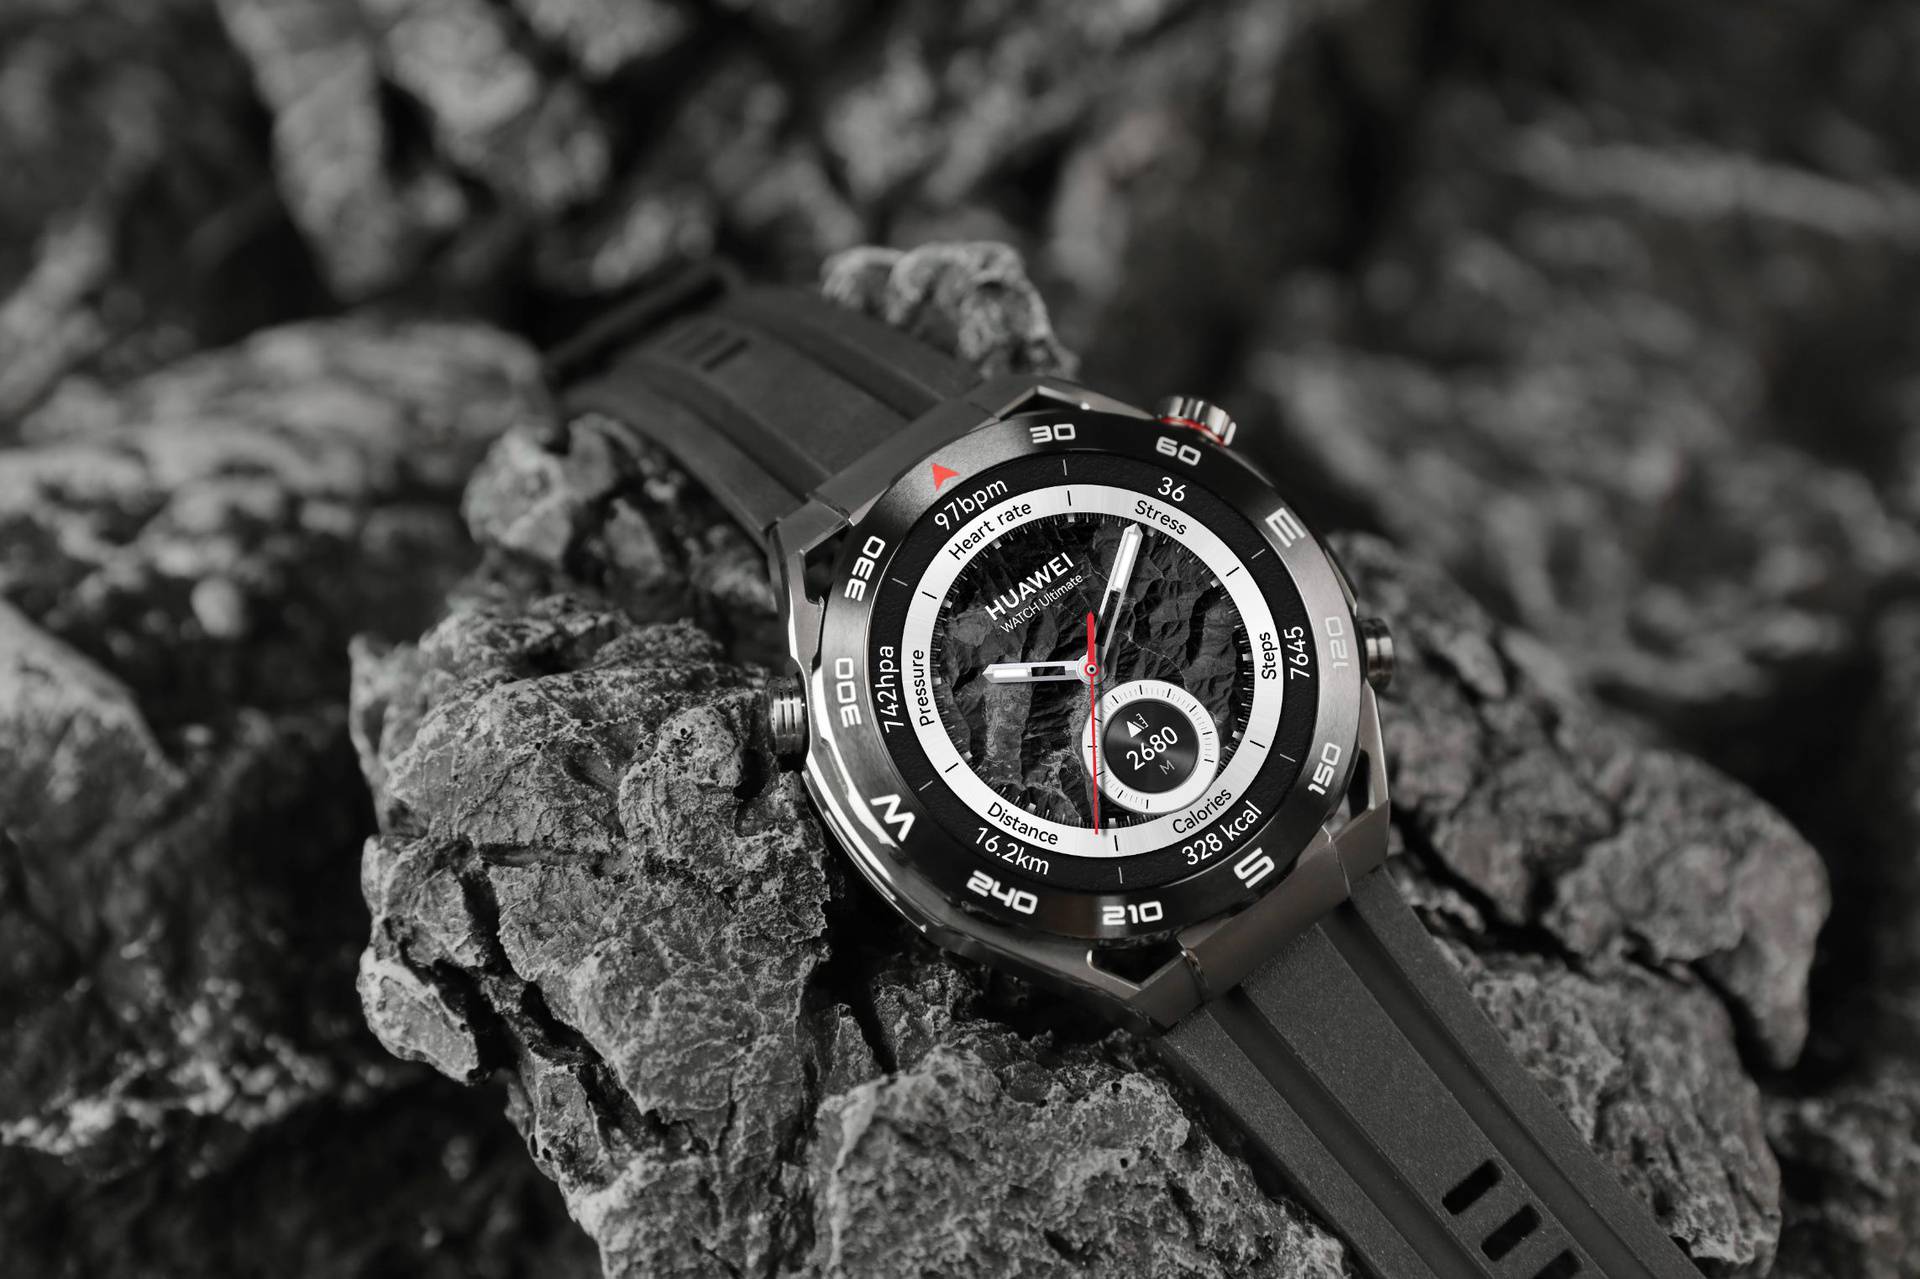 Stigao je Huawei Watch Ultimate – novo remek-djelo u kategoriji pametnih satova